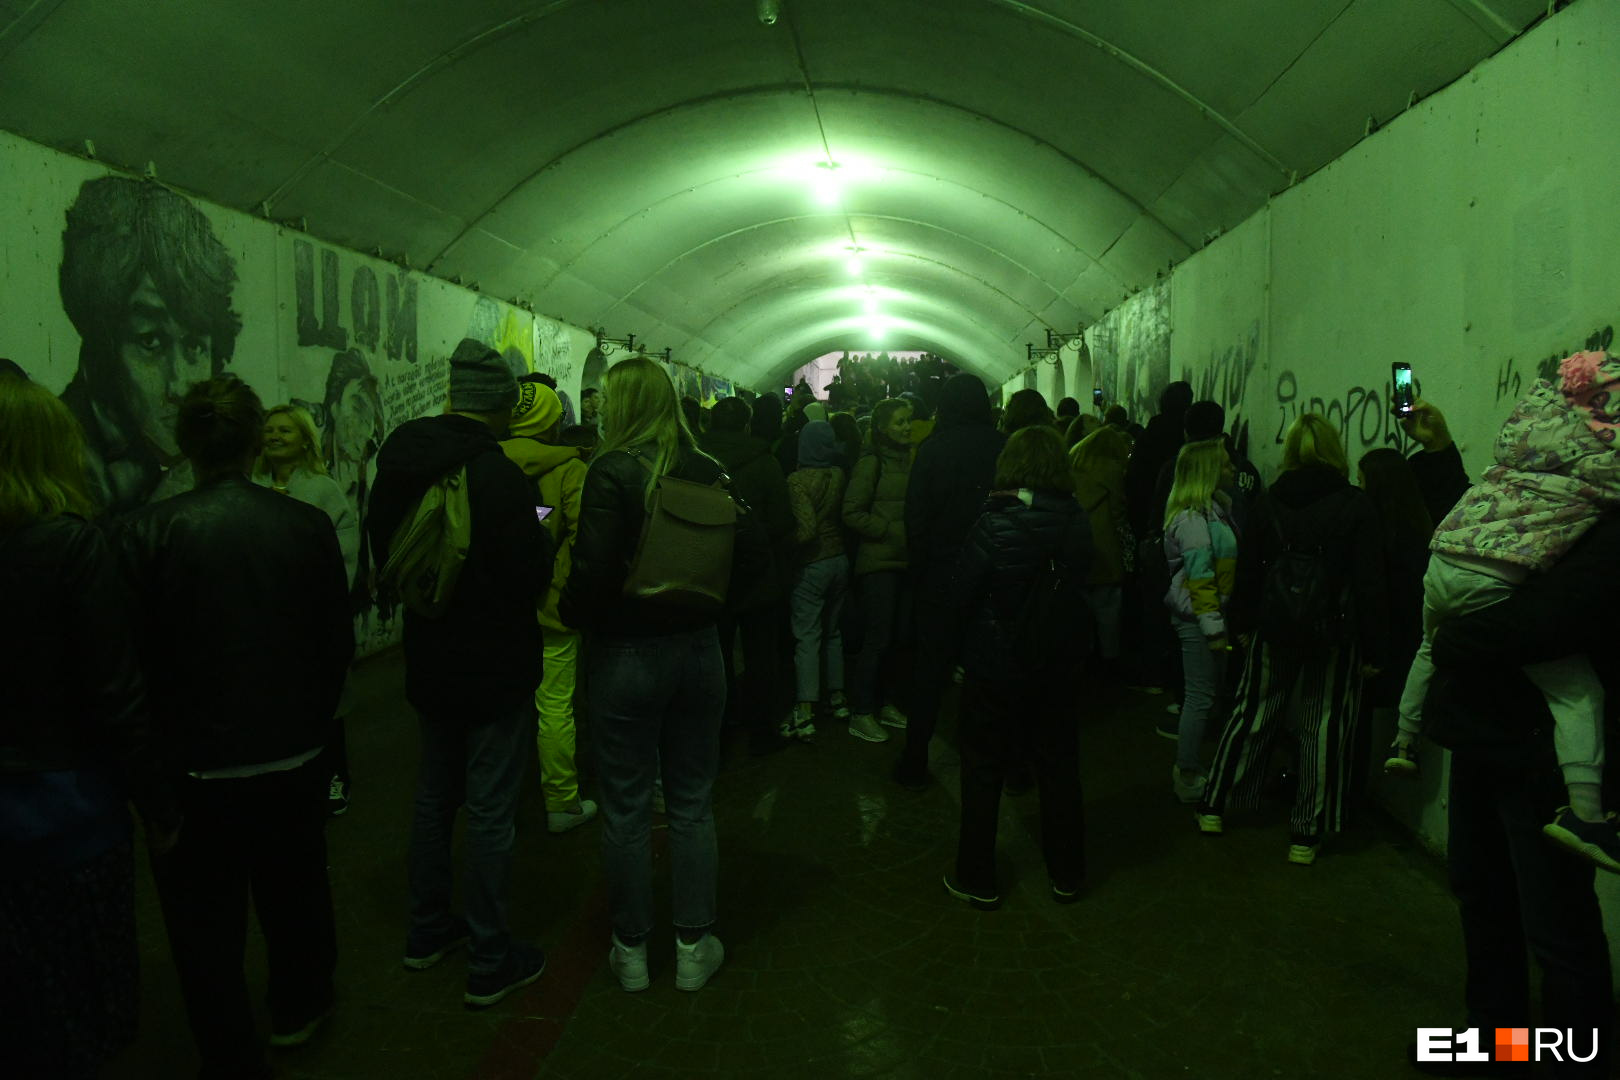 Толпа людей практически заблокировала движение в подземном переходе под Плотинкой